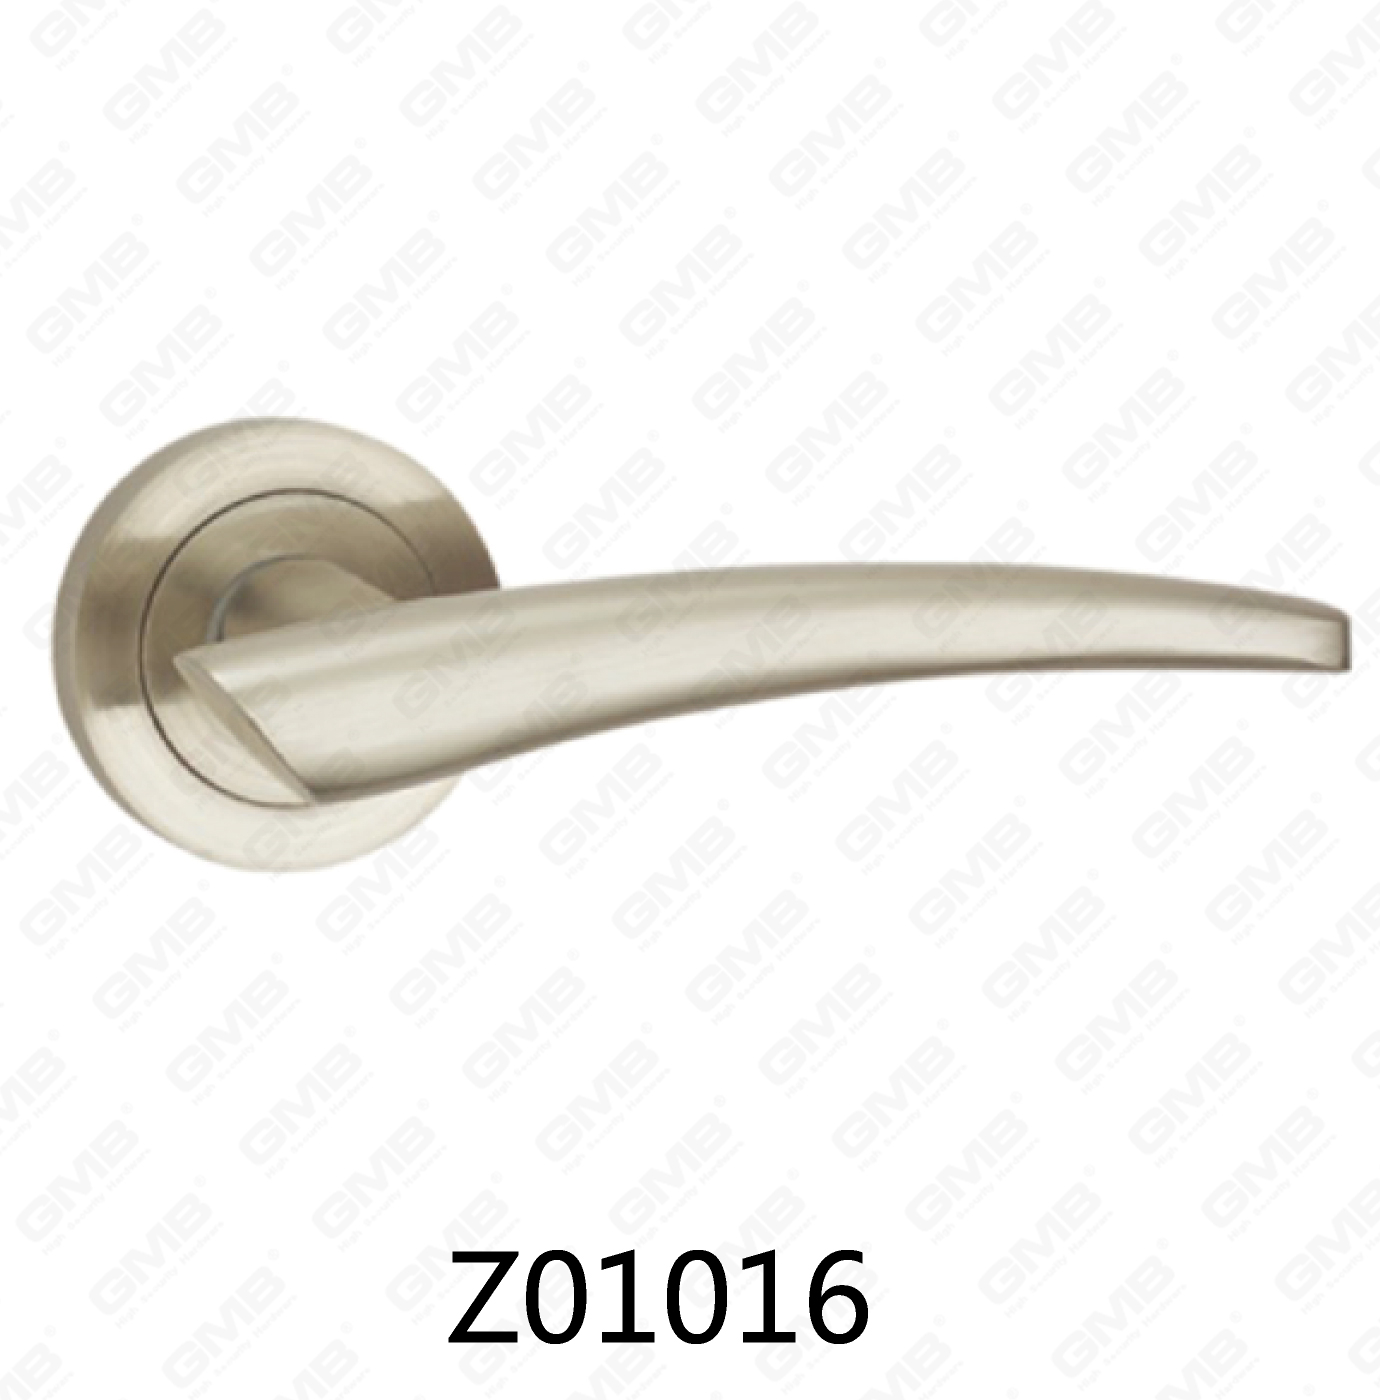 Asa de puerta de roseta de aluminio de aleación de zinc Zamak con roseta redonda (Z01016)